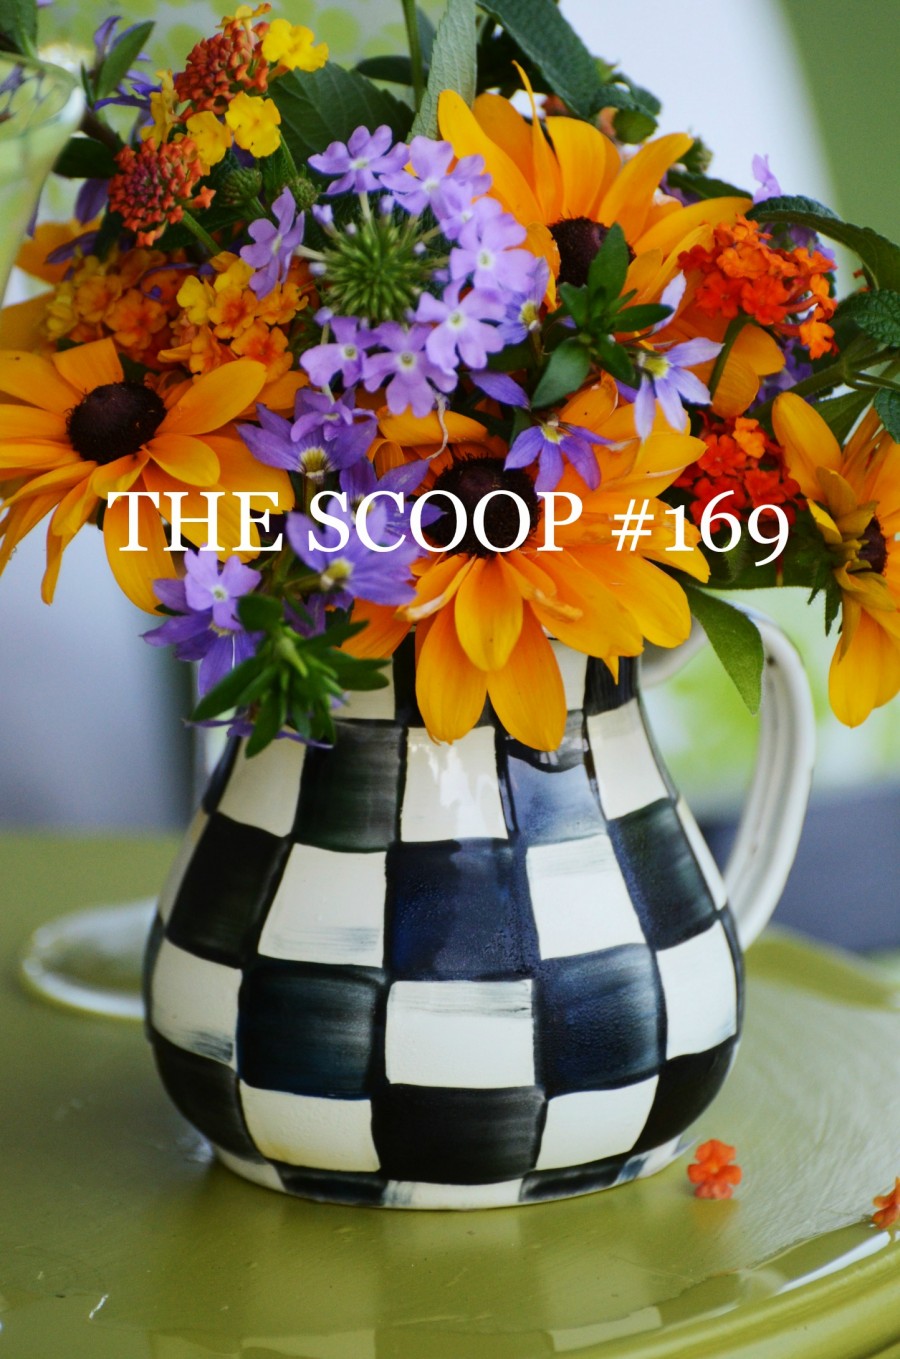 THE SCOOP #169